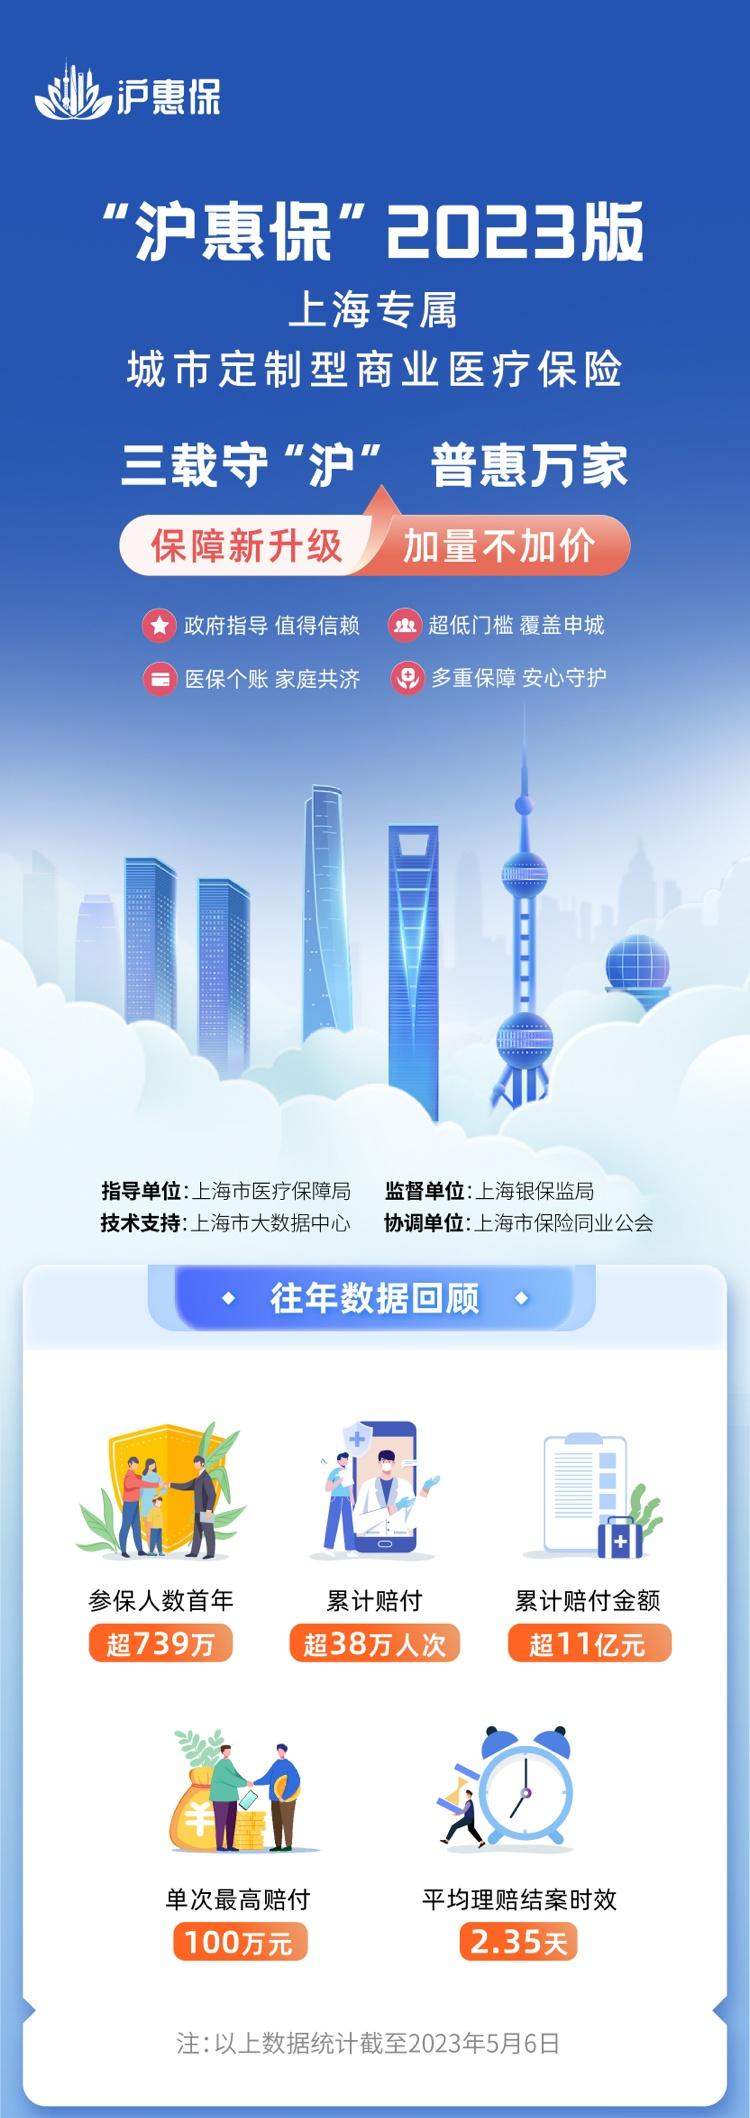 福利:2023年“上海汇宝”今日上线。 有哪些升级？ 谁可以投保？